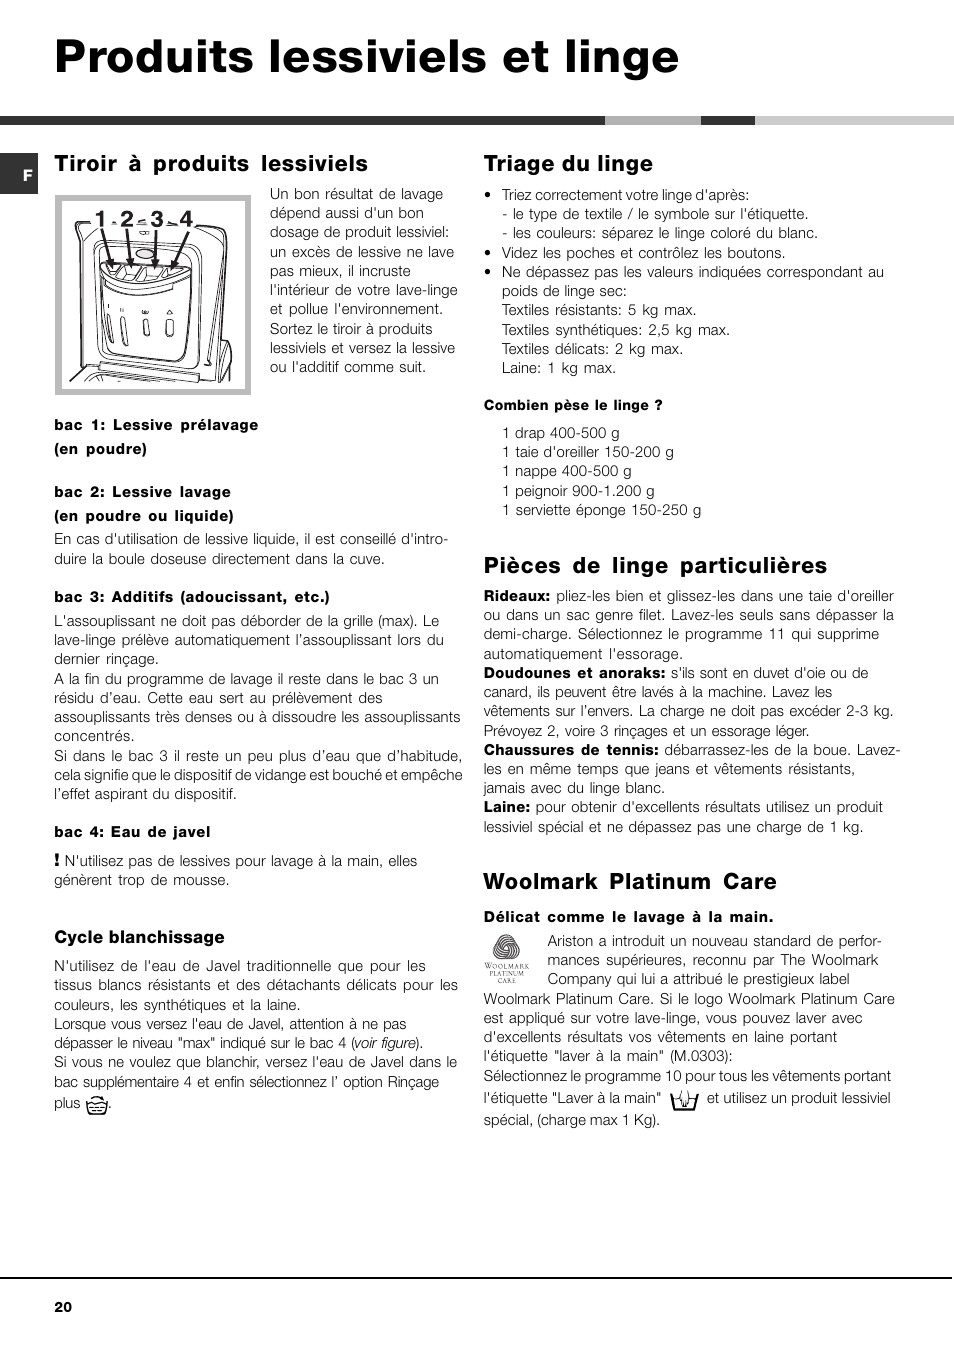 Produits lessiviels et linge, Tiroir à produits lessiviels, Triage du linge  | Hotpoint Ariston AVTL 83 User Manual | Page 20 / 72 | Original mode